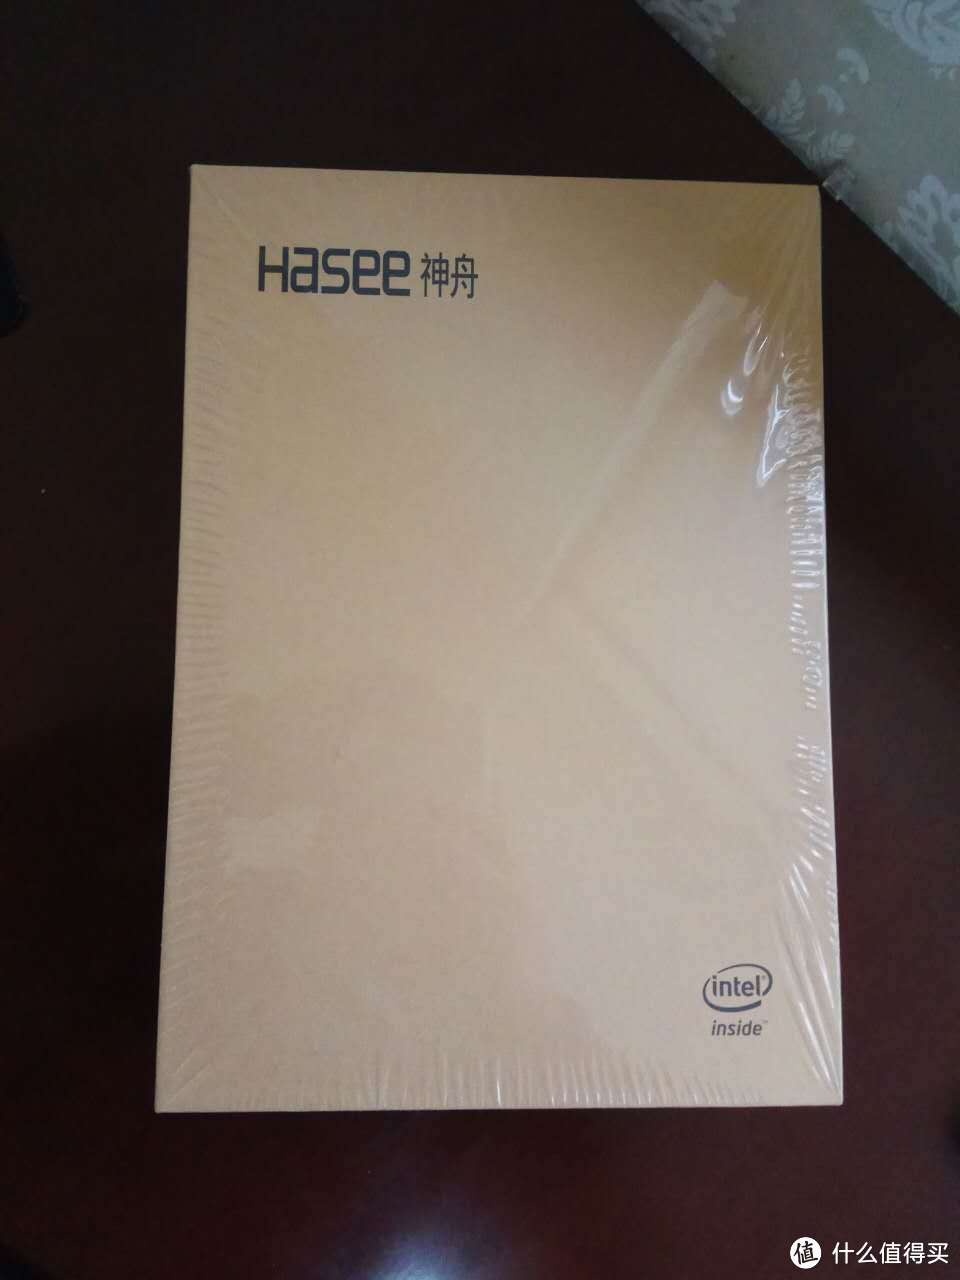 Hasee 神舟 PCpad X5 平板电脑 开箱贴